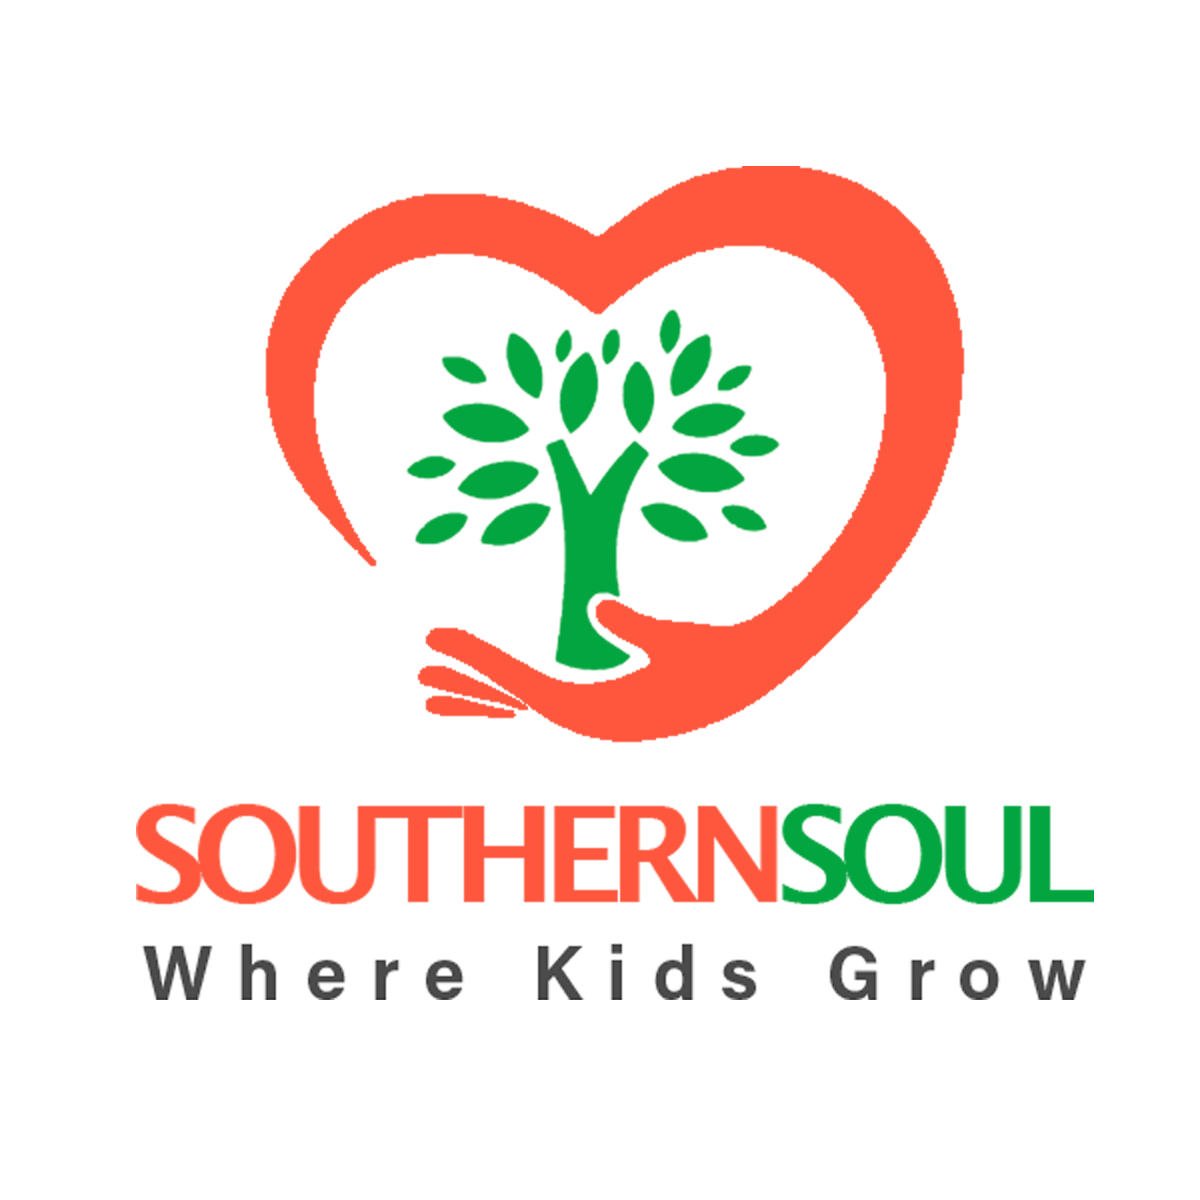 FDC Logo - Southern Soul FDC.. Where Kids Grow!